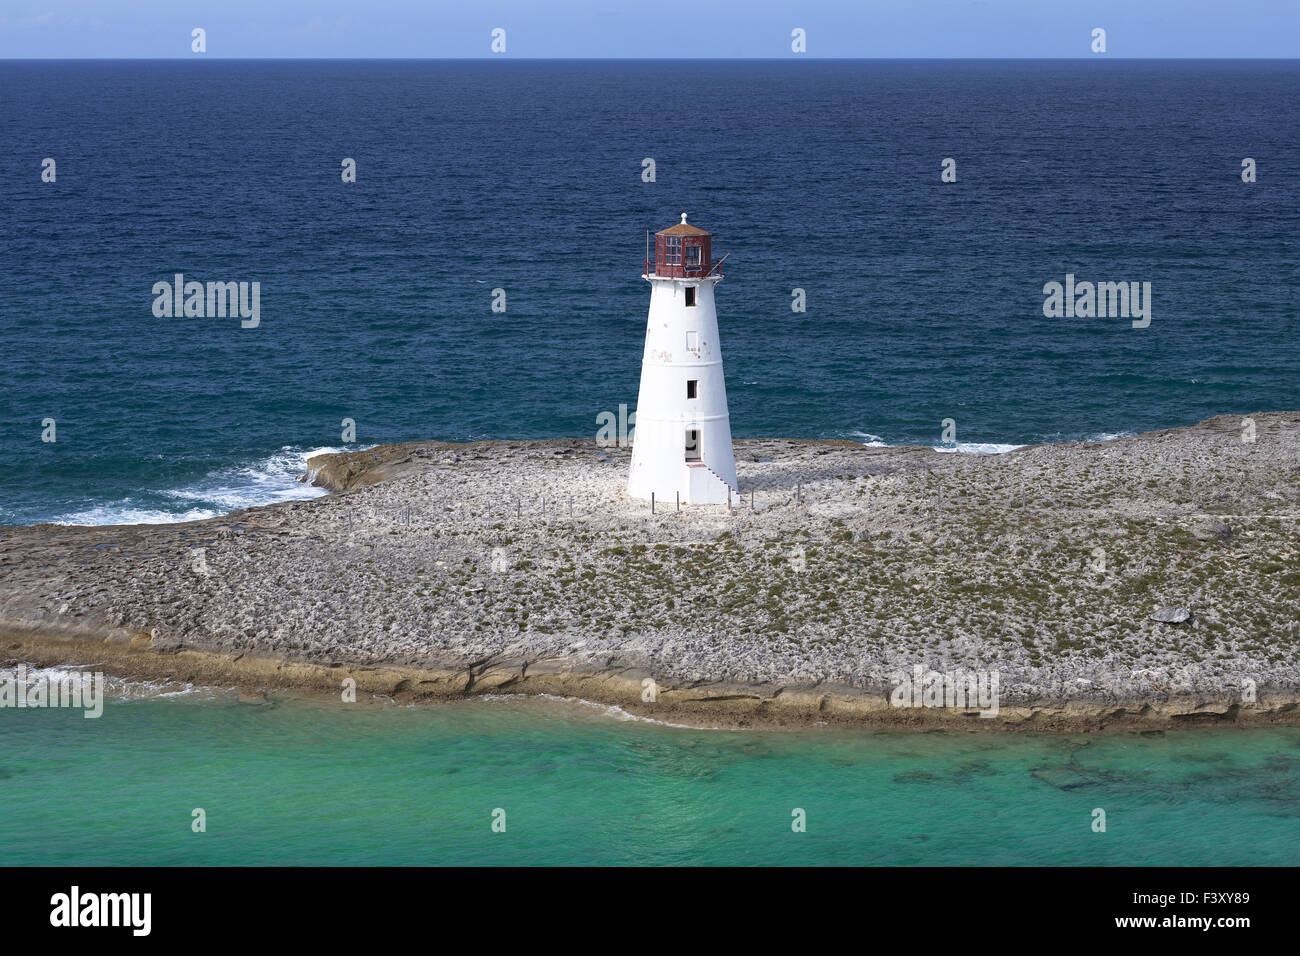 Lighthouse on the Paradise Island Stock Photo